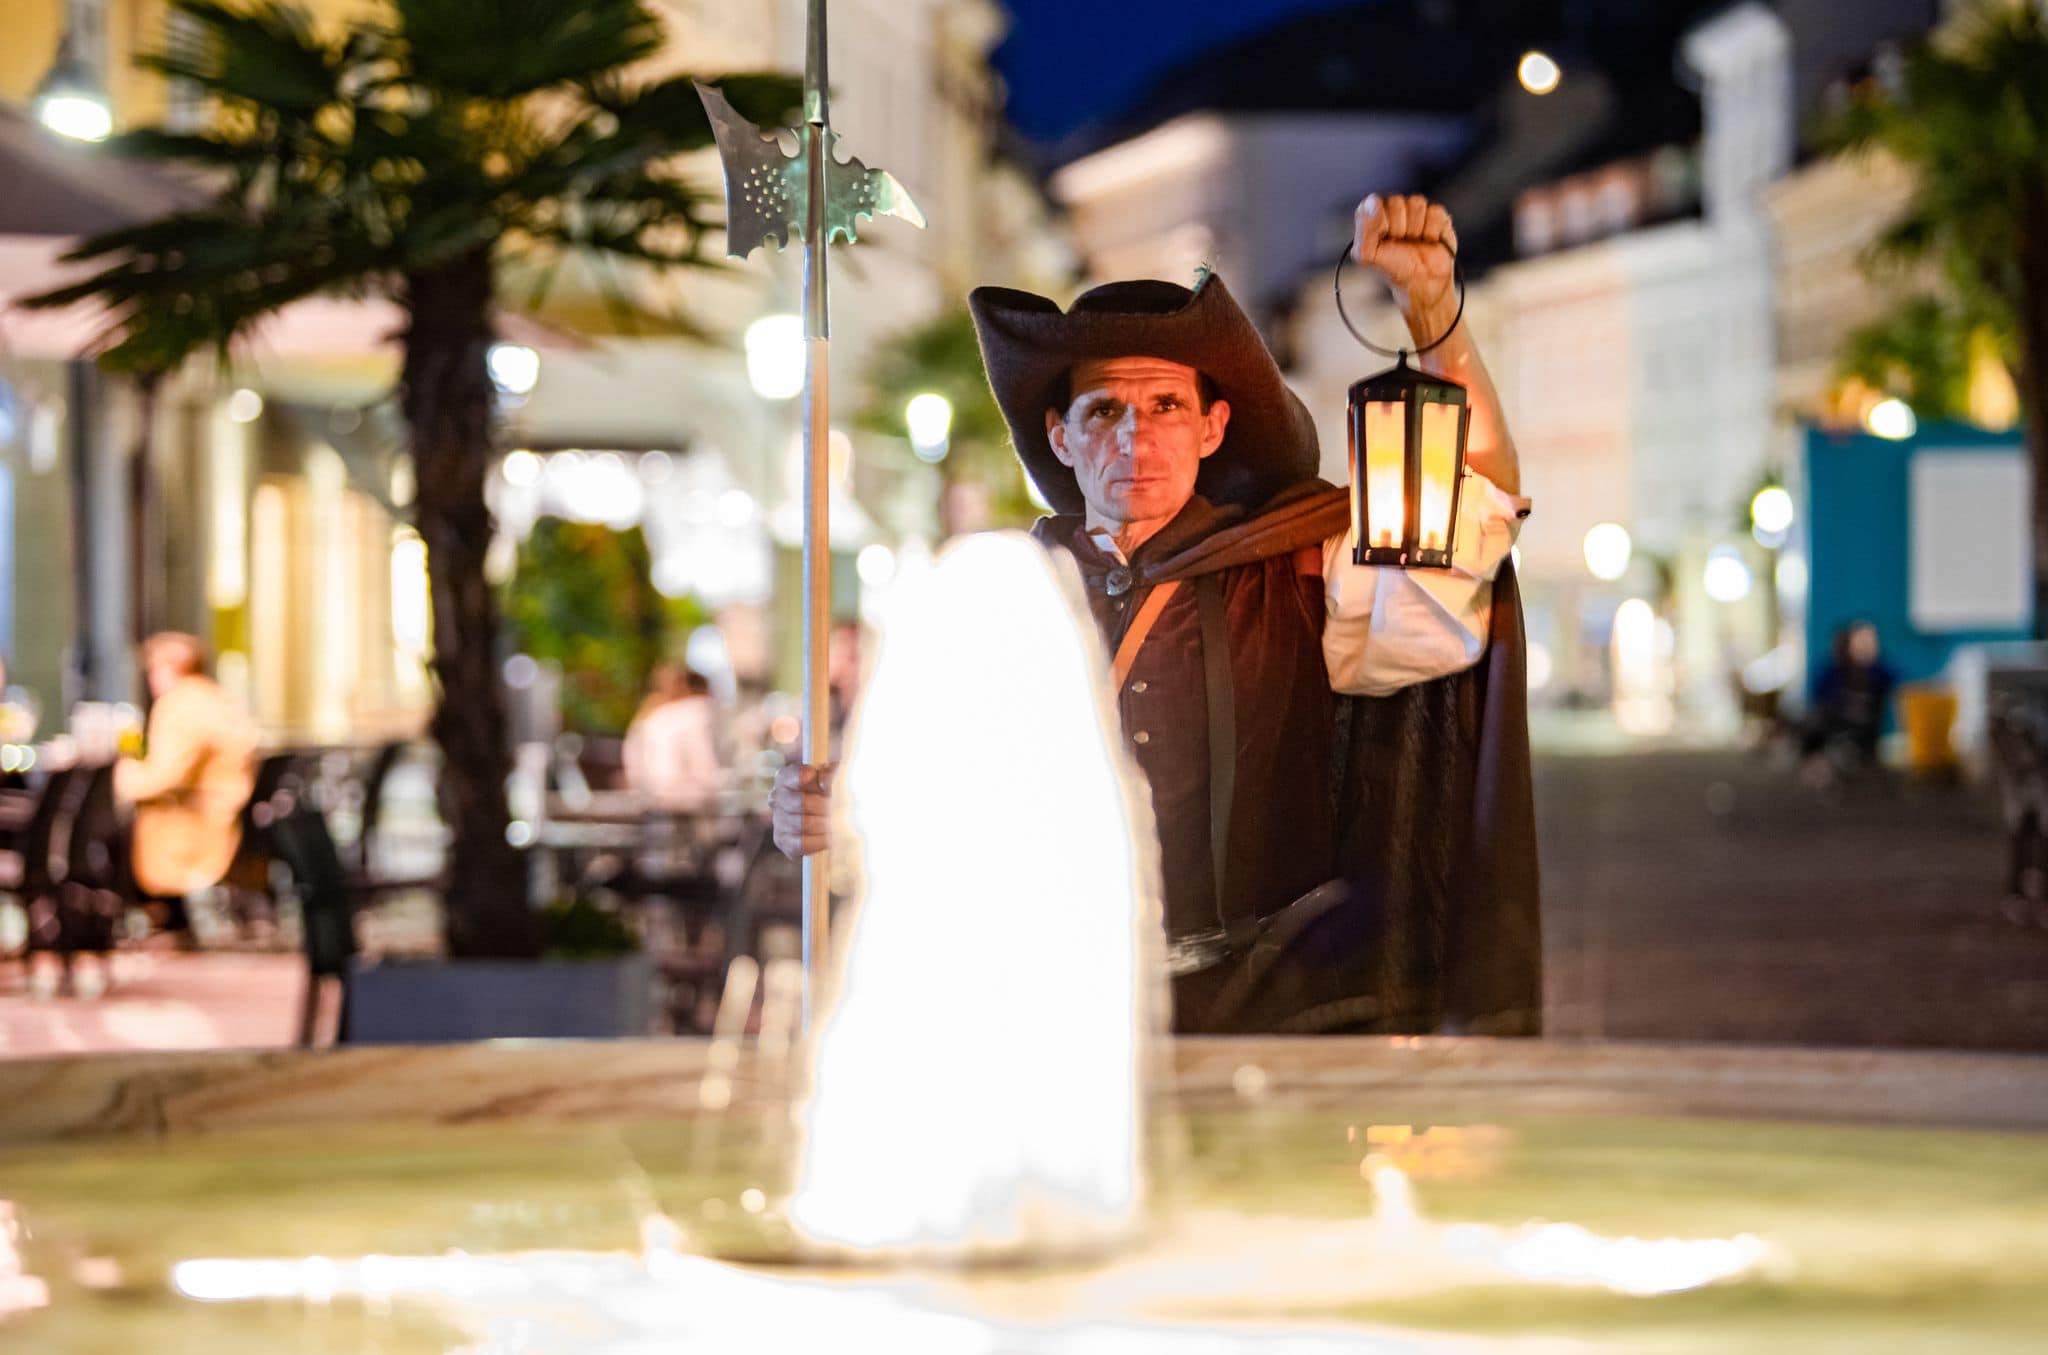 Nachtwächter bei nächtlicher Nachtwächter-Führung in Klagenfurt mit Lampe